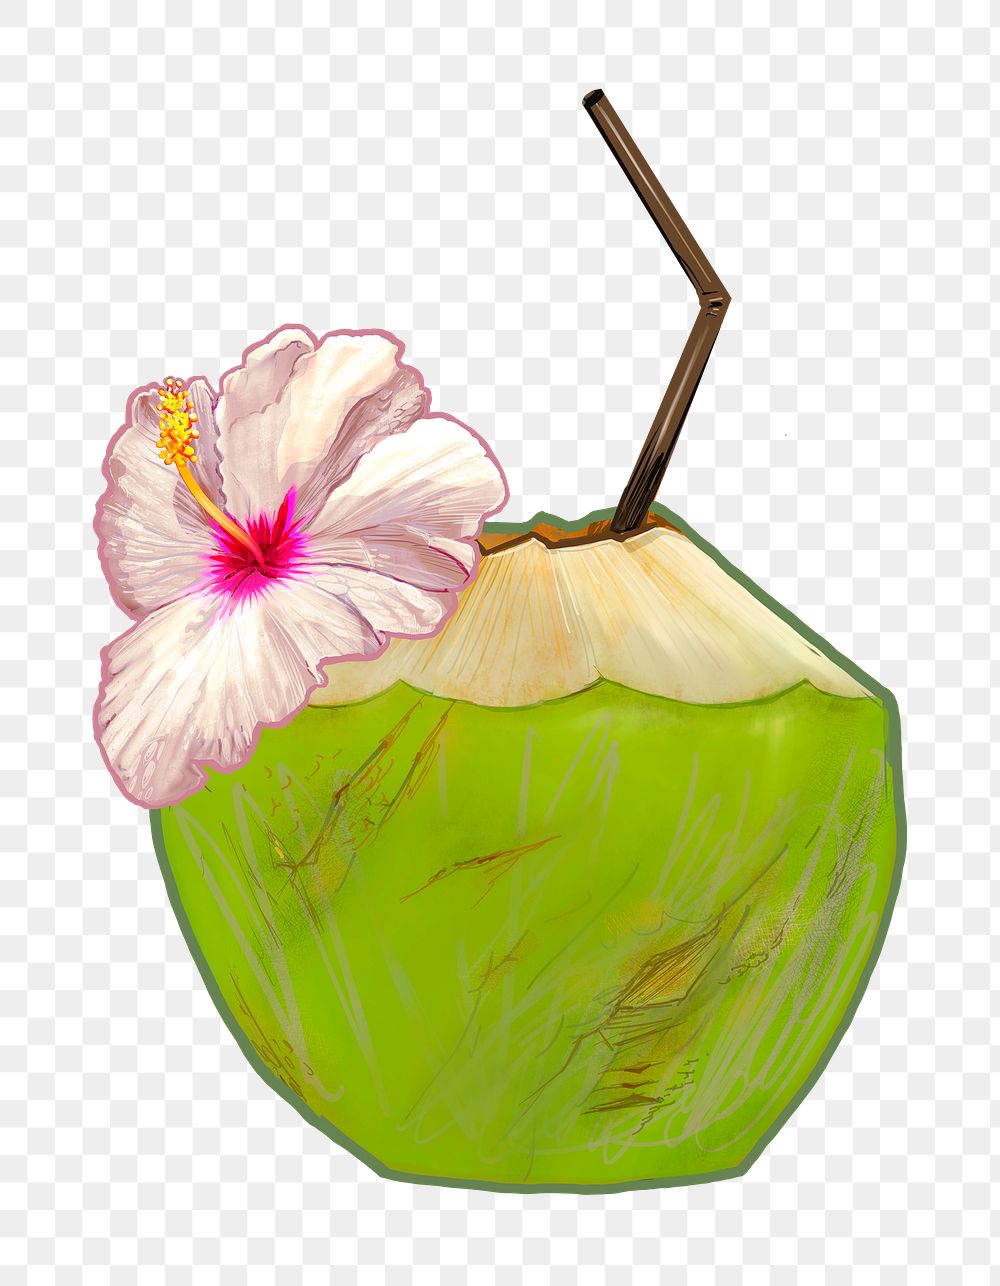 Coconut drink png illustration sticker, transparent background